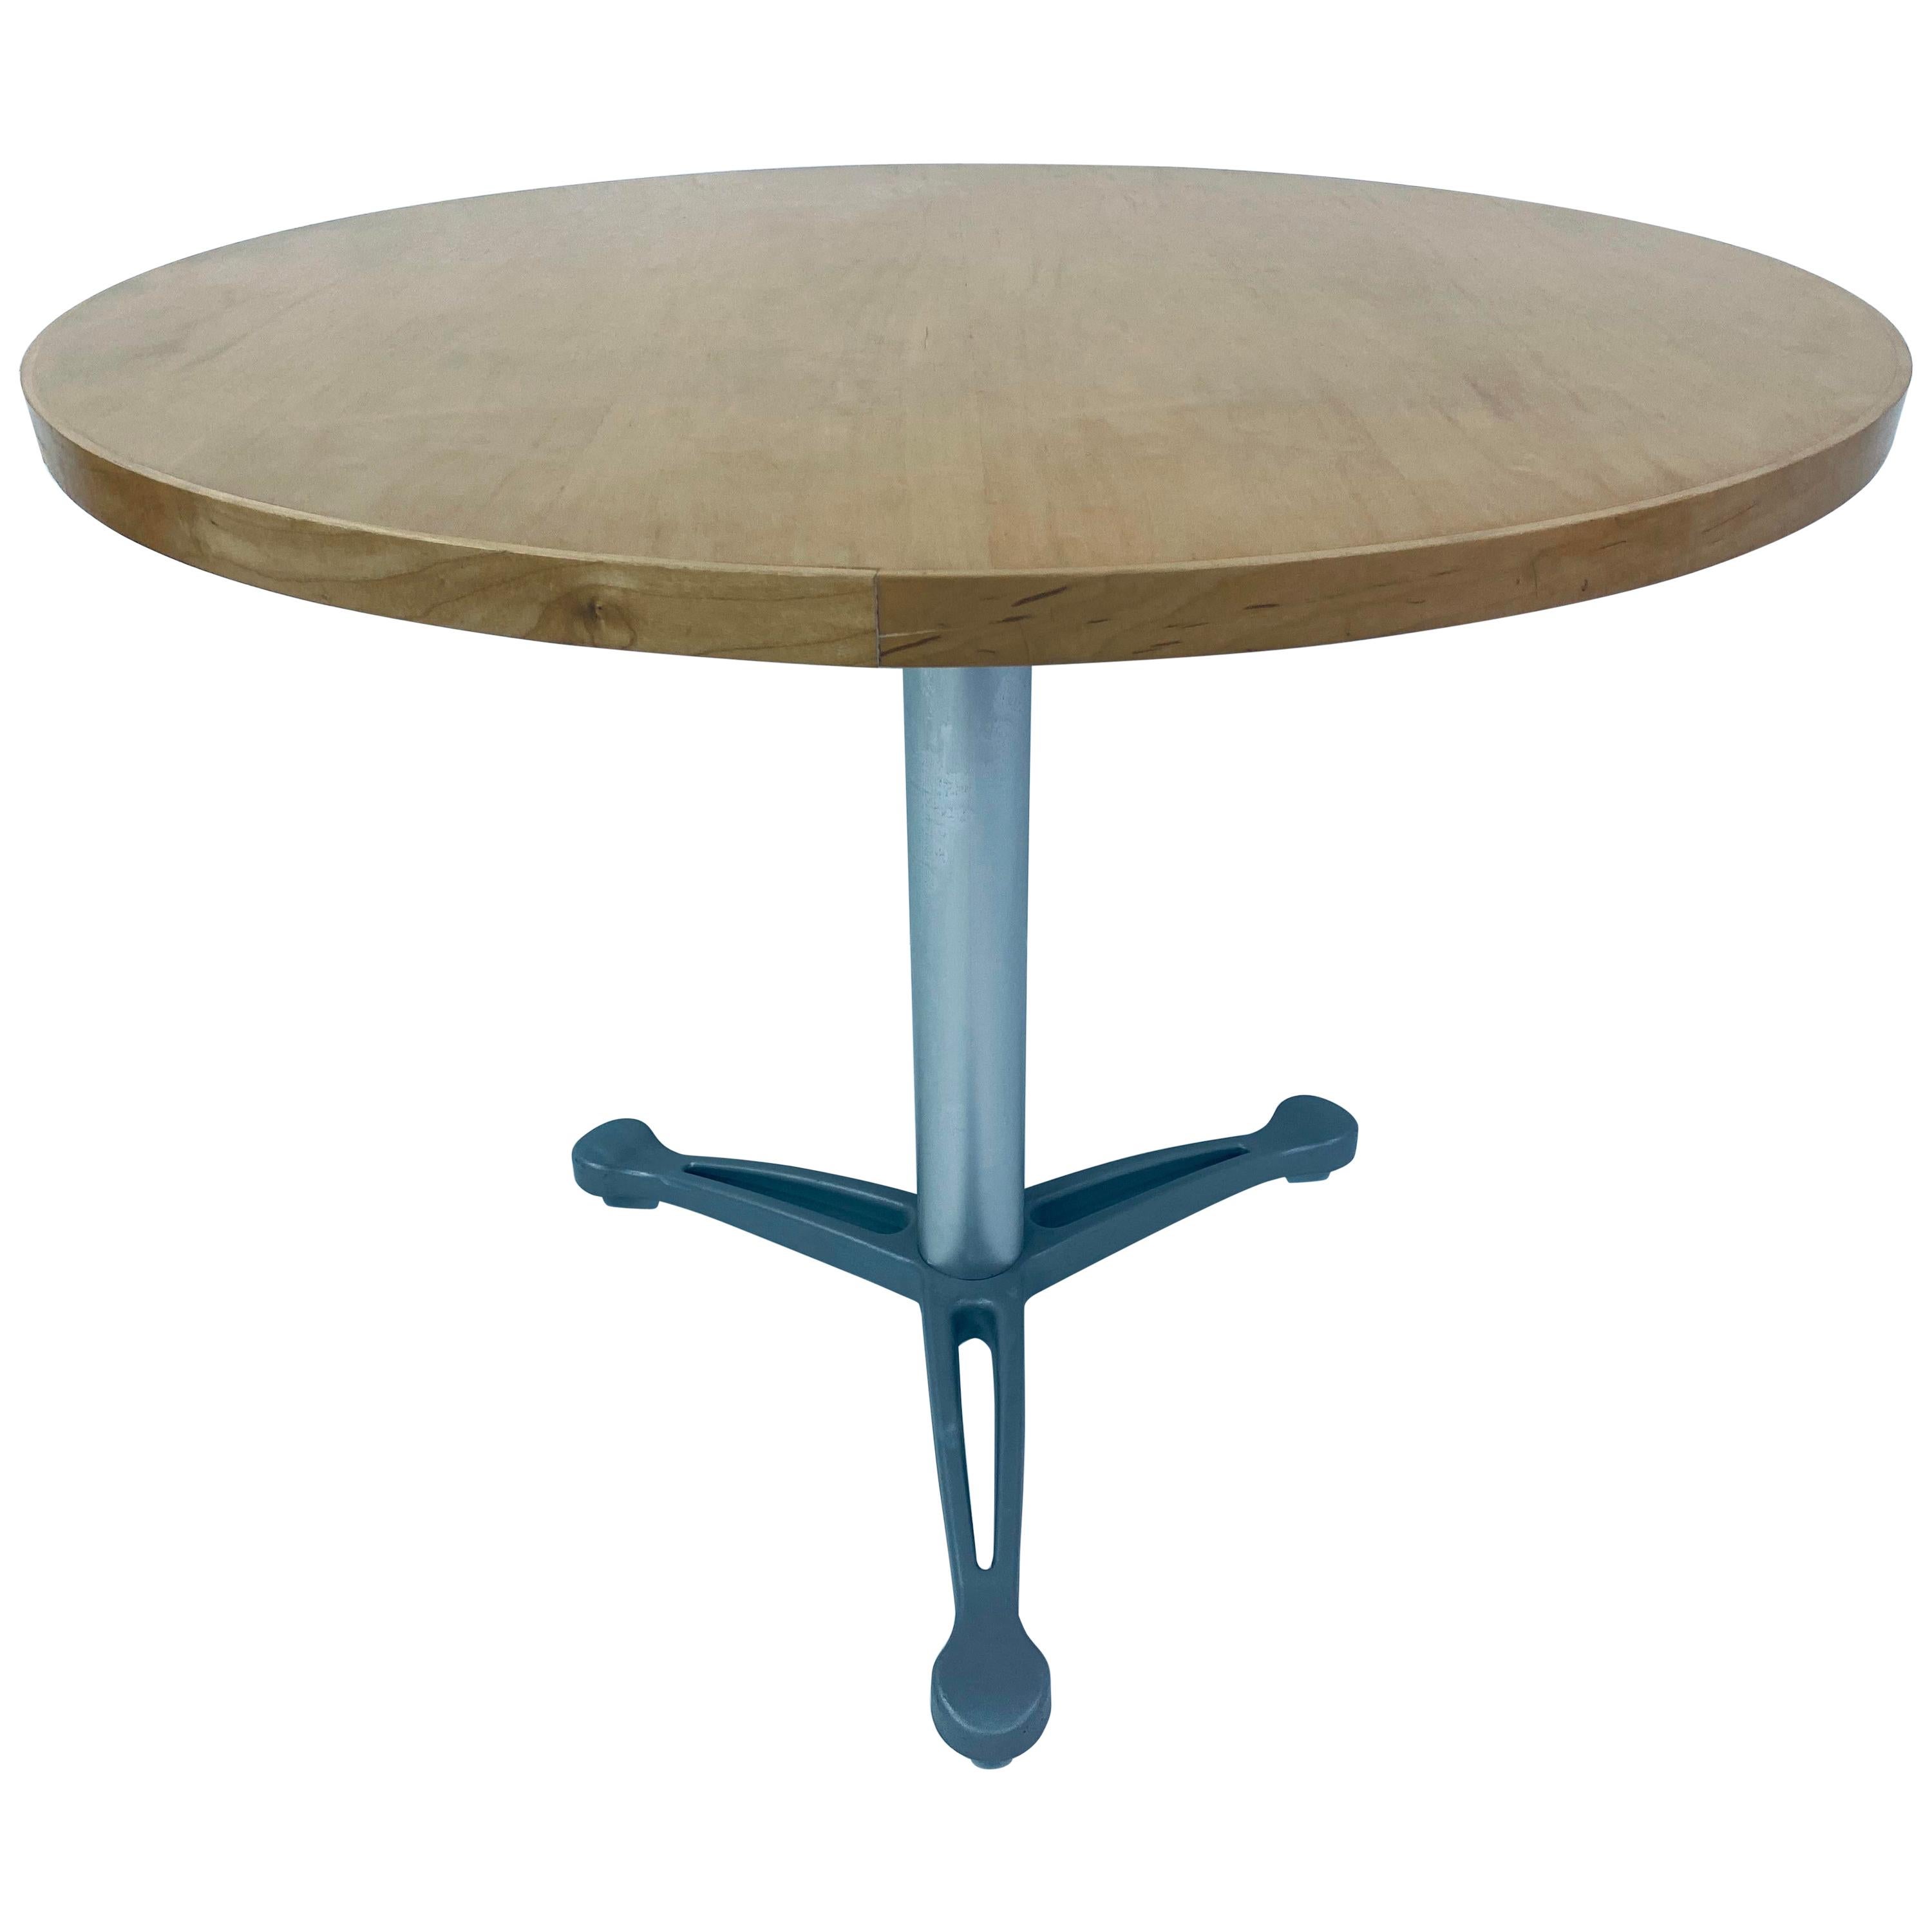 Emanuela Frattini “Propeller” Table for Knoll